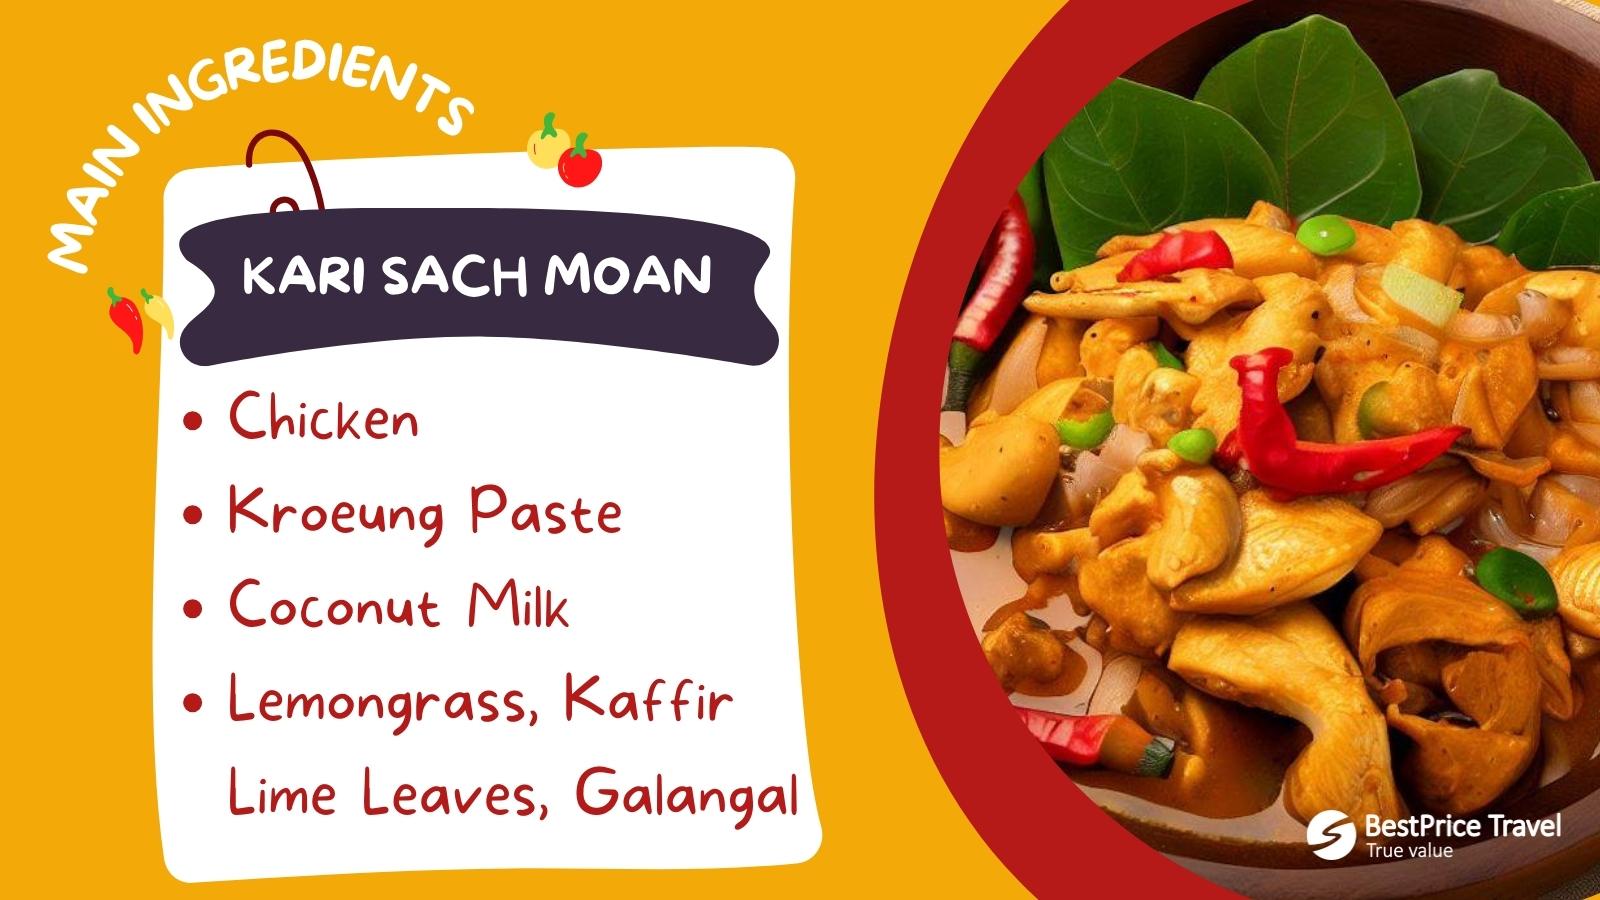 Kari Sach Moan Main Ingredients